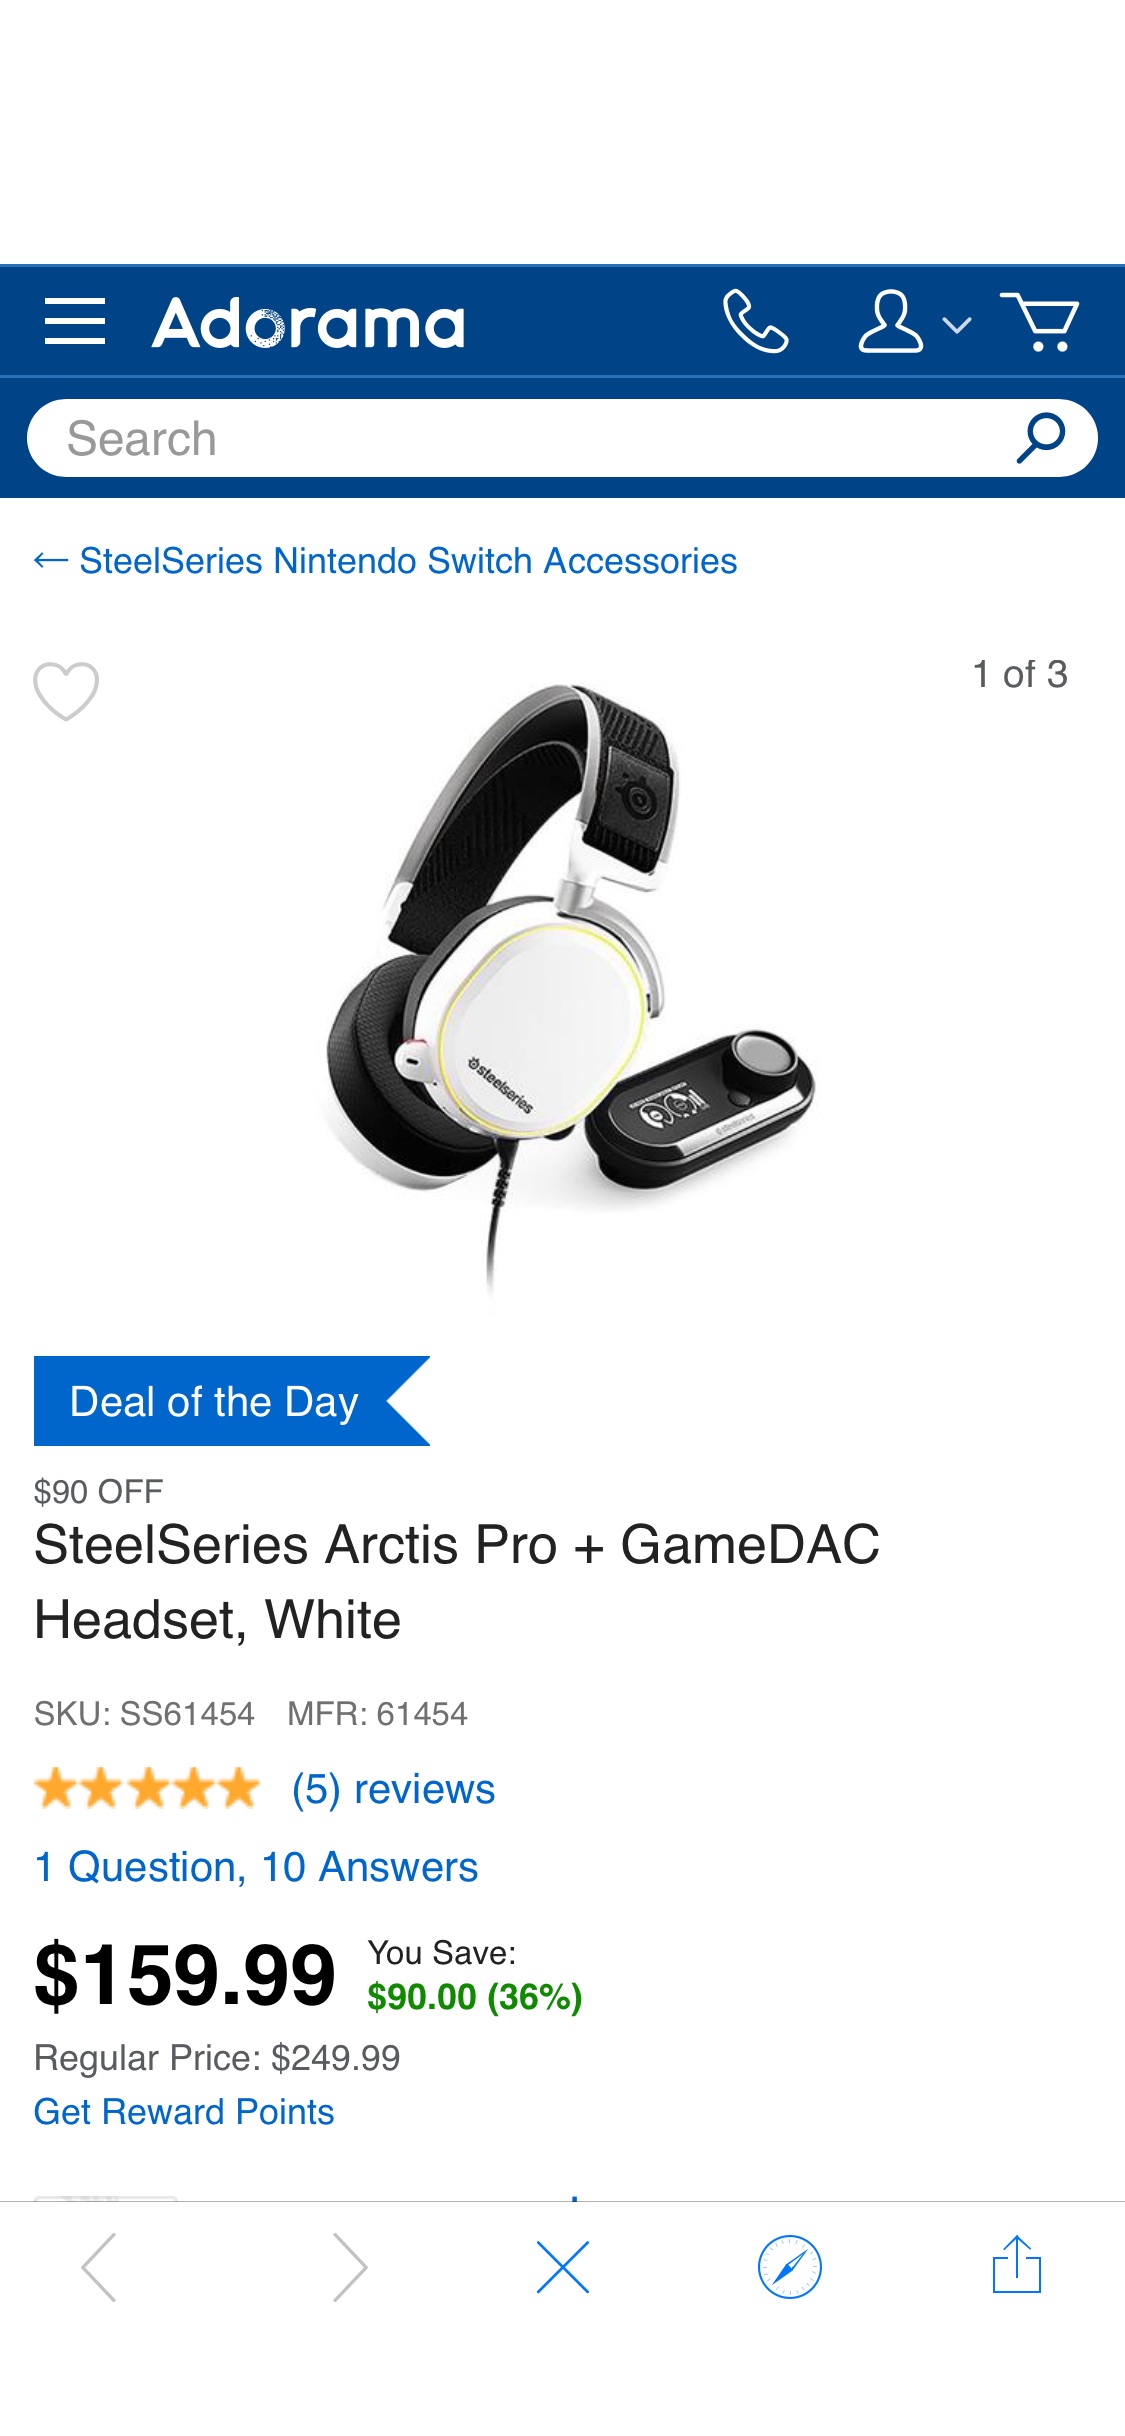 SteelSeries Arctis Pro + GameDAC Headset, White 耳机61454 - Adorama